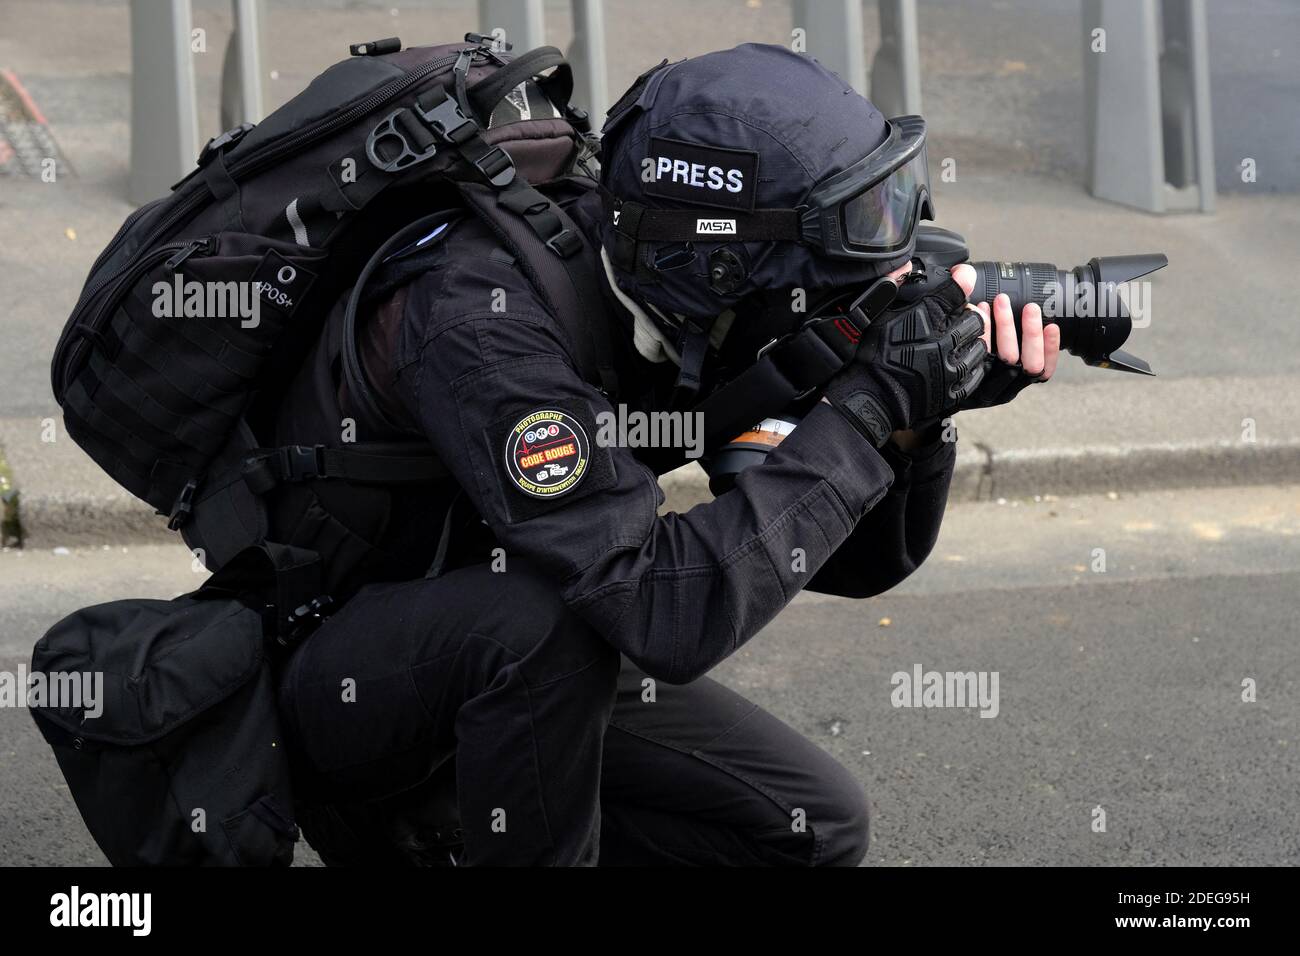 Un fotografo della stampa che scatta fotografie, indossando casco e  maschera a gas, coprendo la rivolta dei giubbotti gialli (giletti jaunes)  movimento, violenza si è verificato nelle strade di Parigi, scontri  scoppiati